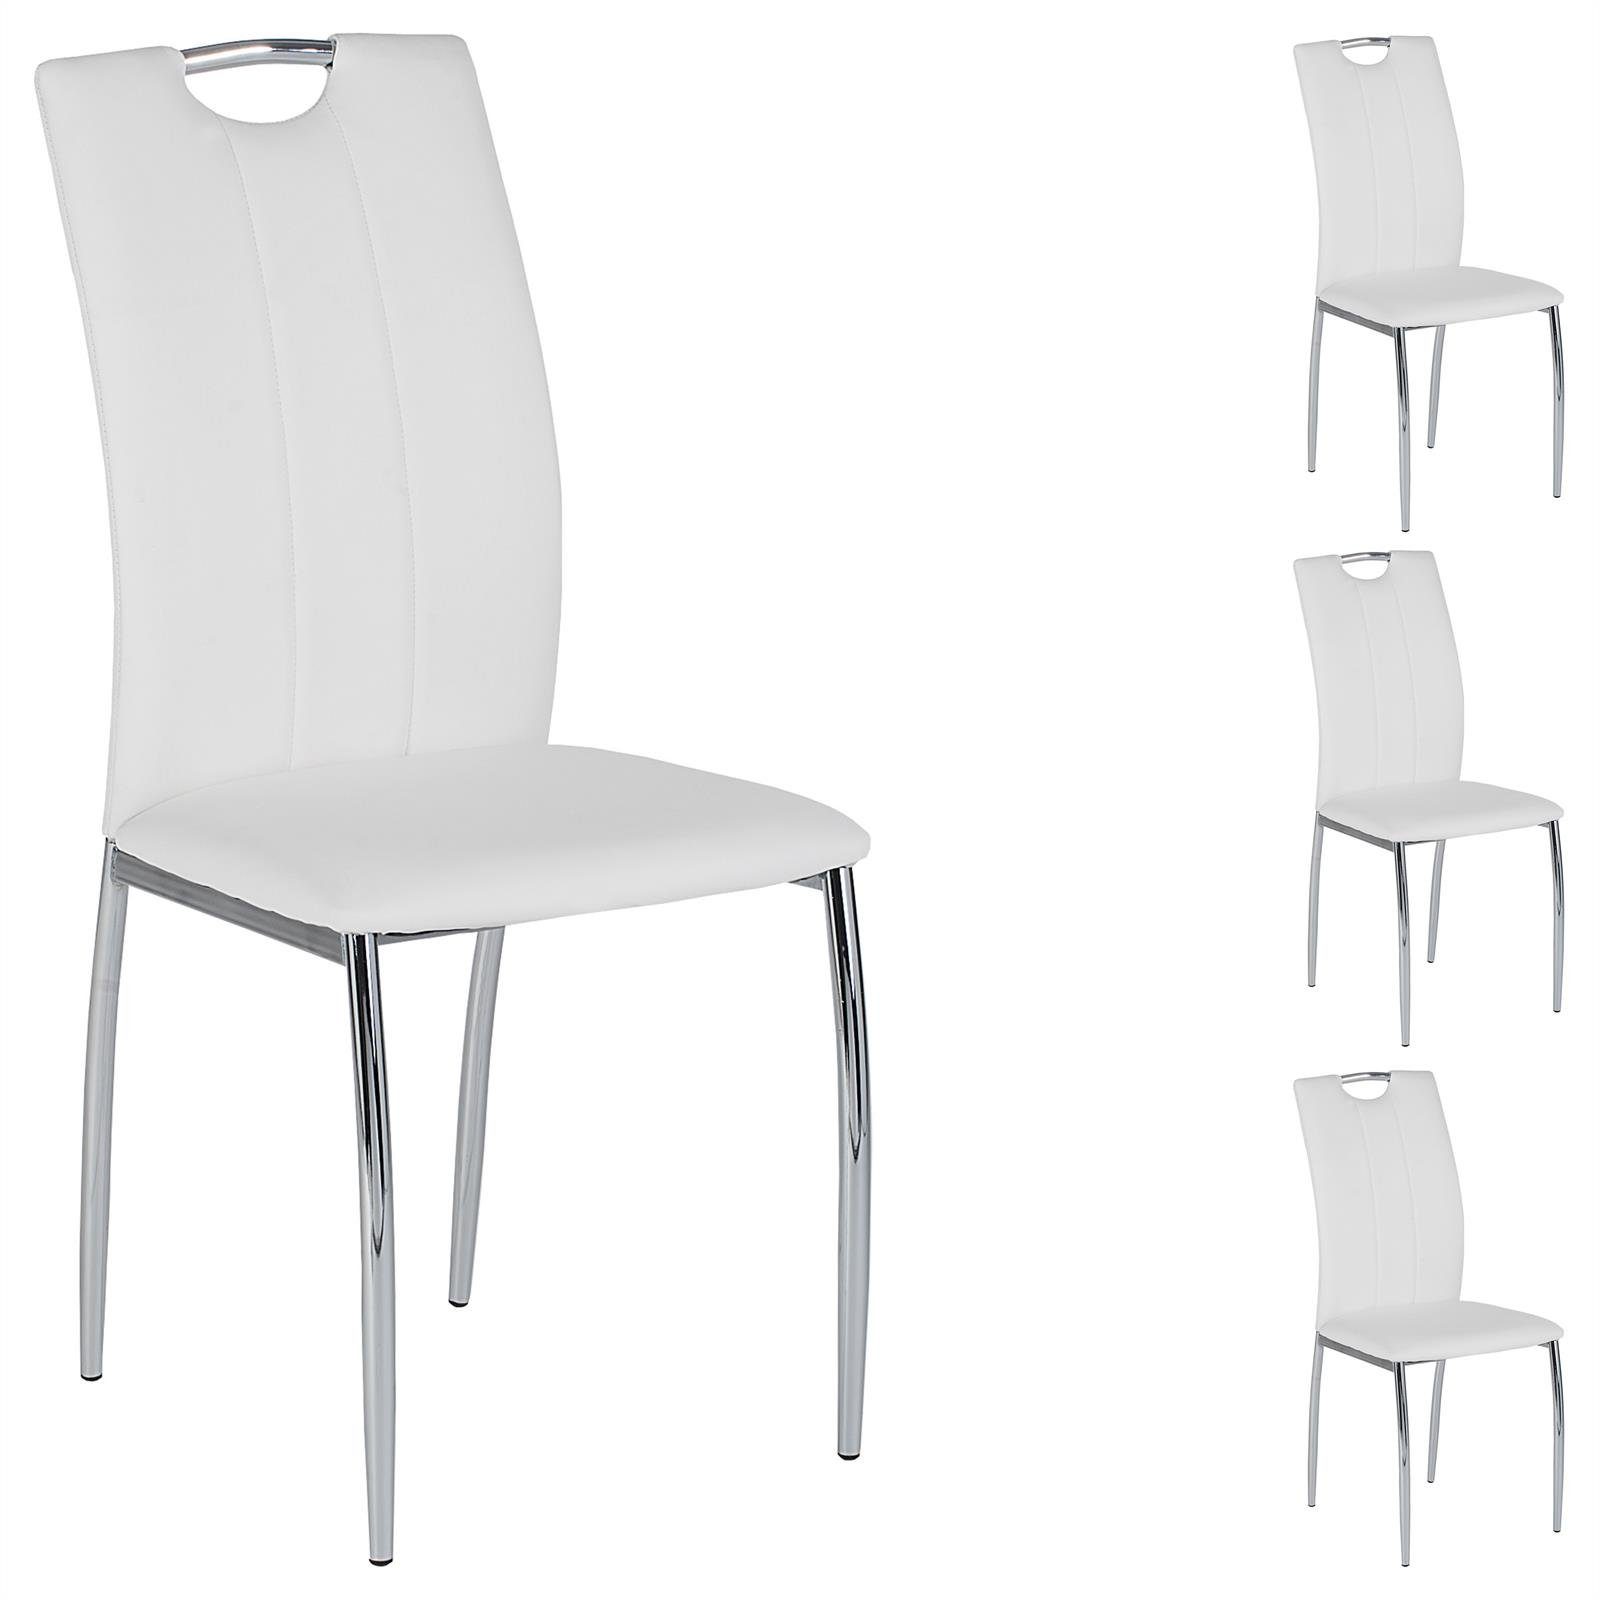 IDIMEX Esszimmerstuhl APOLLO (4 St), 4er SET Esszimmerstuhl Essgruppe Sitzgruppe, 4 Stühle grau schwarz wei weiß